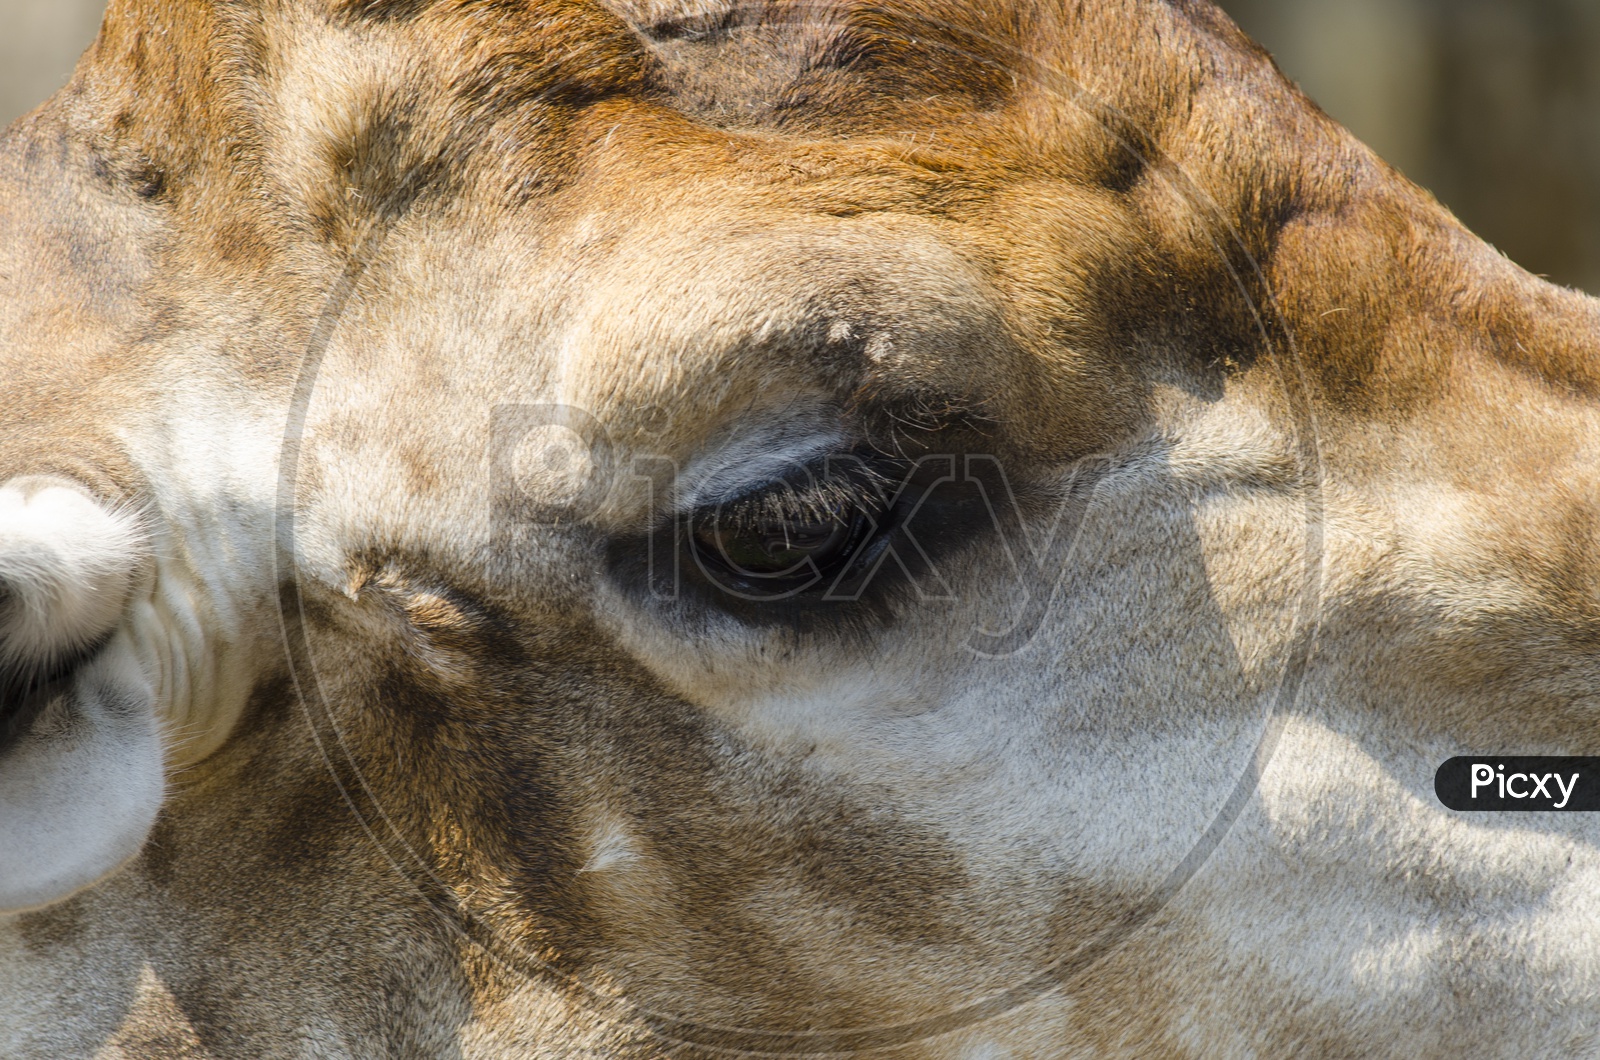 giraffe Eye Closeup